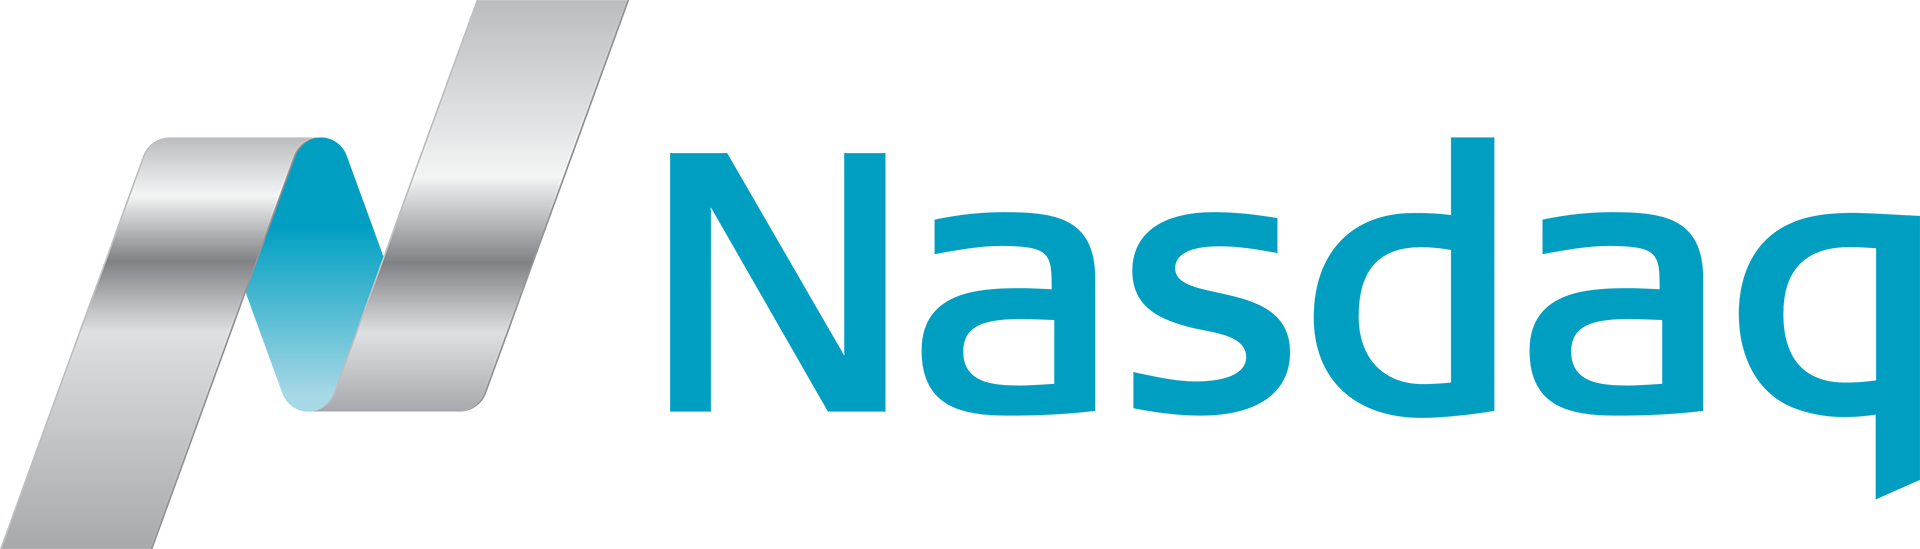 بازار بورس سهامِ نزدک(Nasdaq) در سال 2018 معاملات آتی بیت کوین را ارائه خواهد نمود